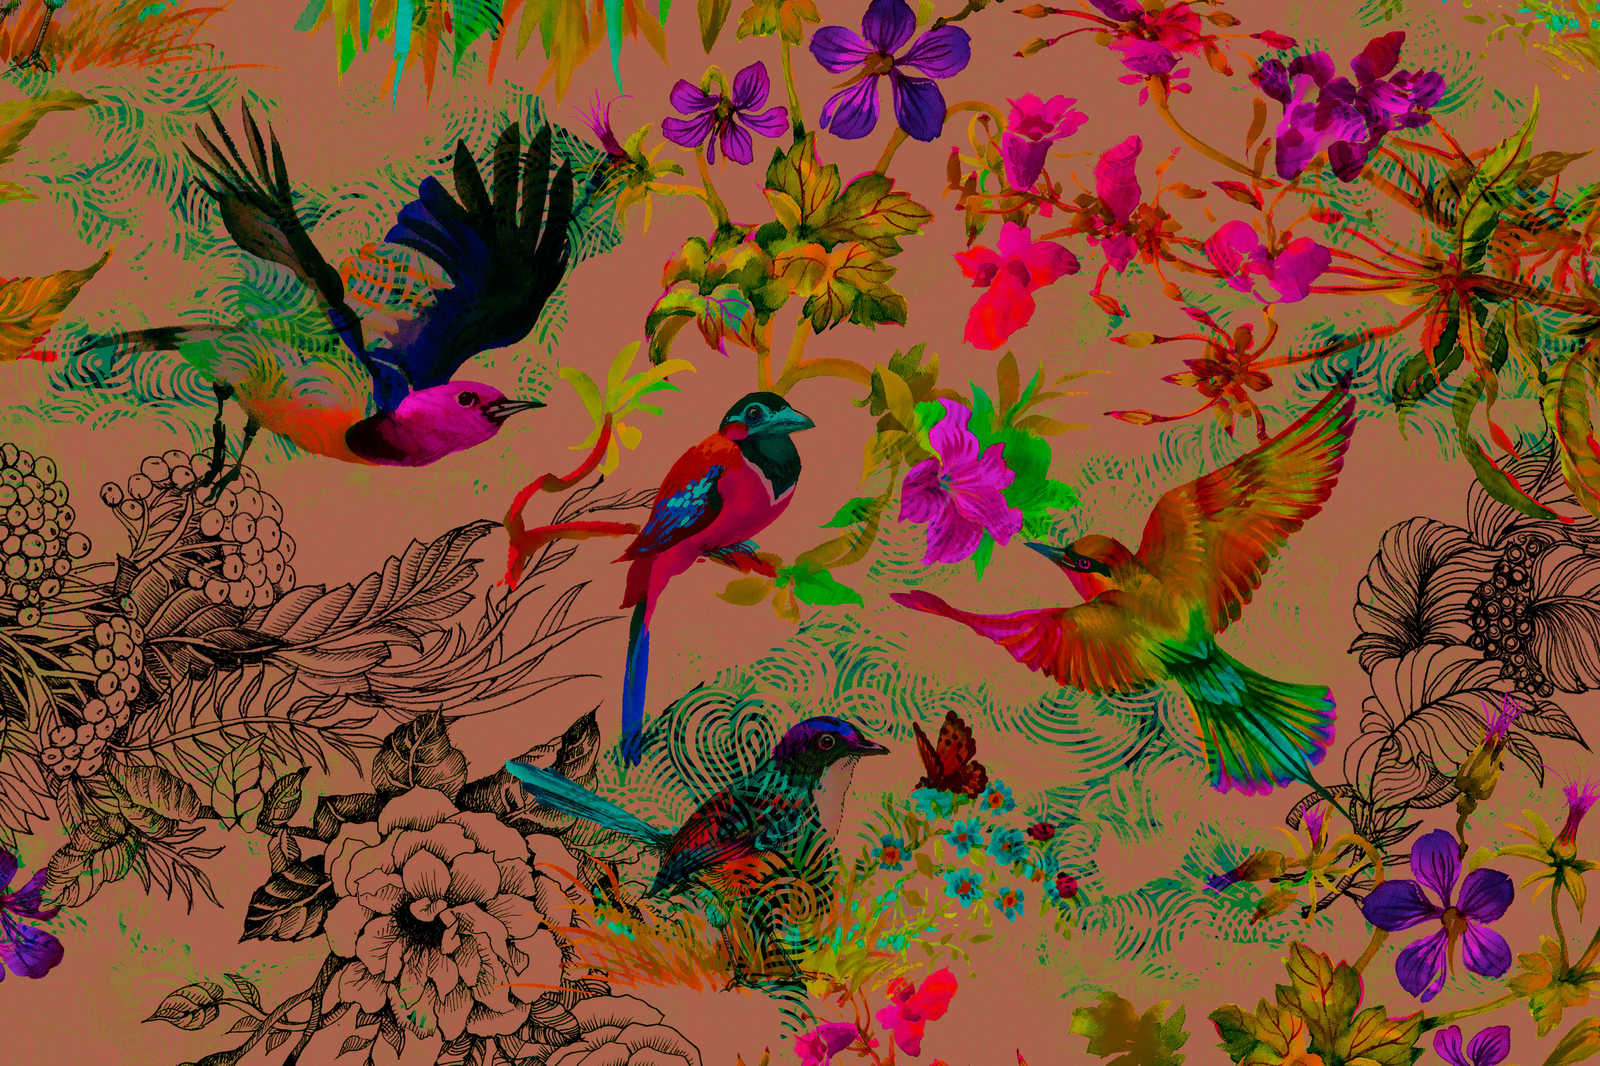             Vogel Leinwandbild im bunten Collage Stil – 0,90 m x 0,60 m
        